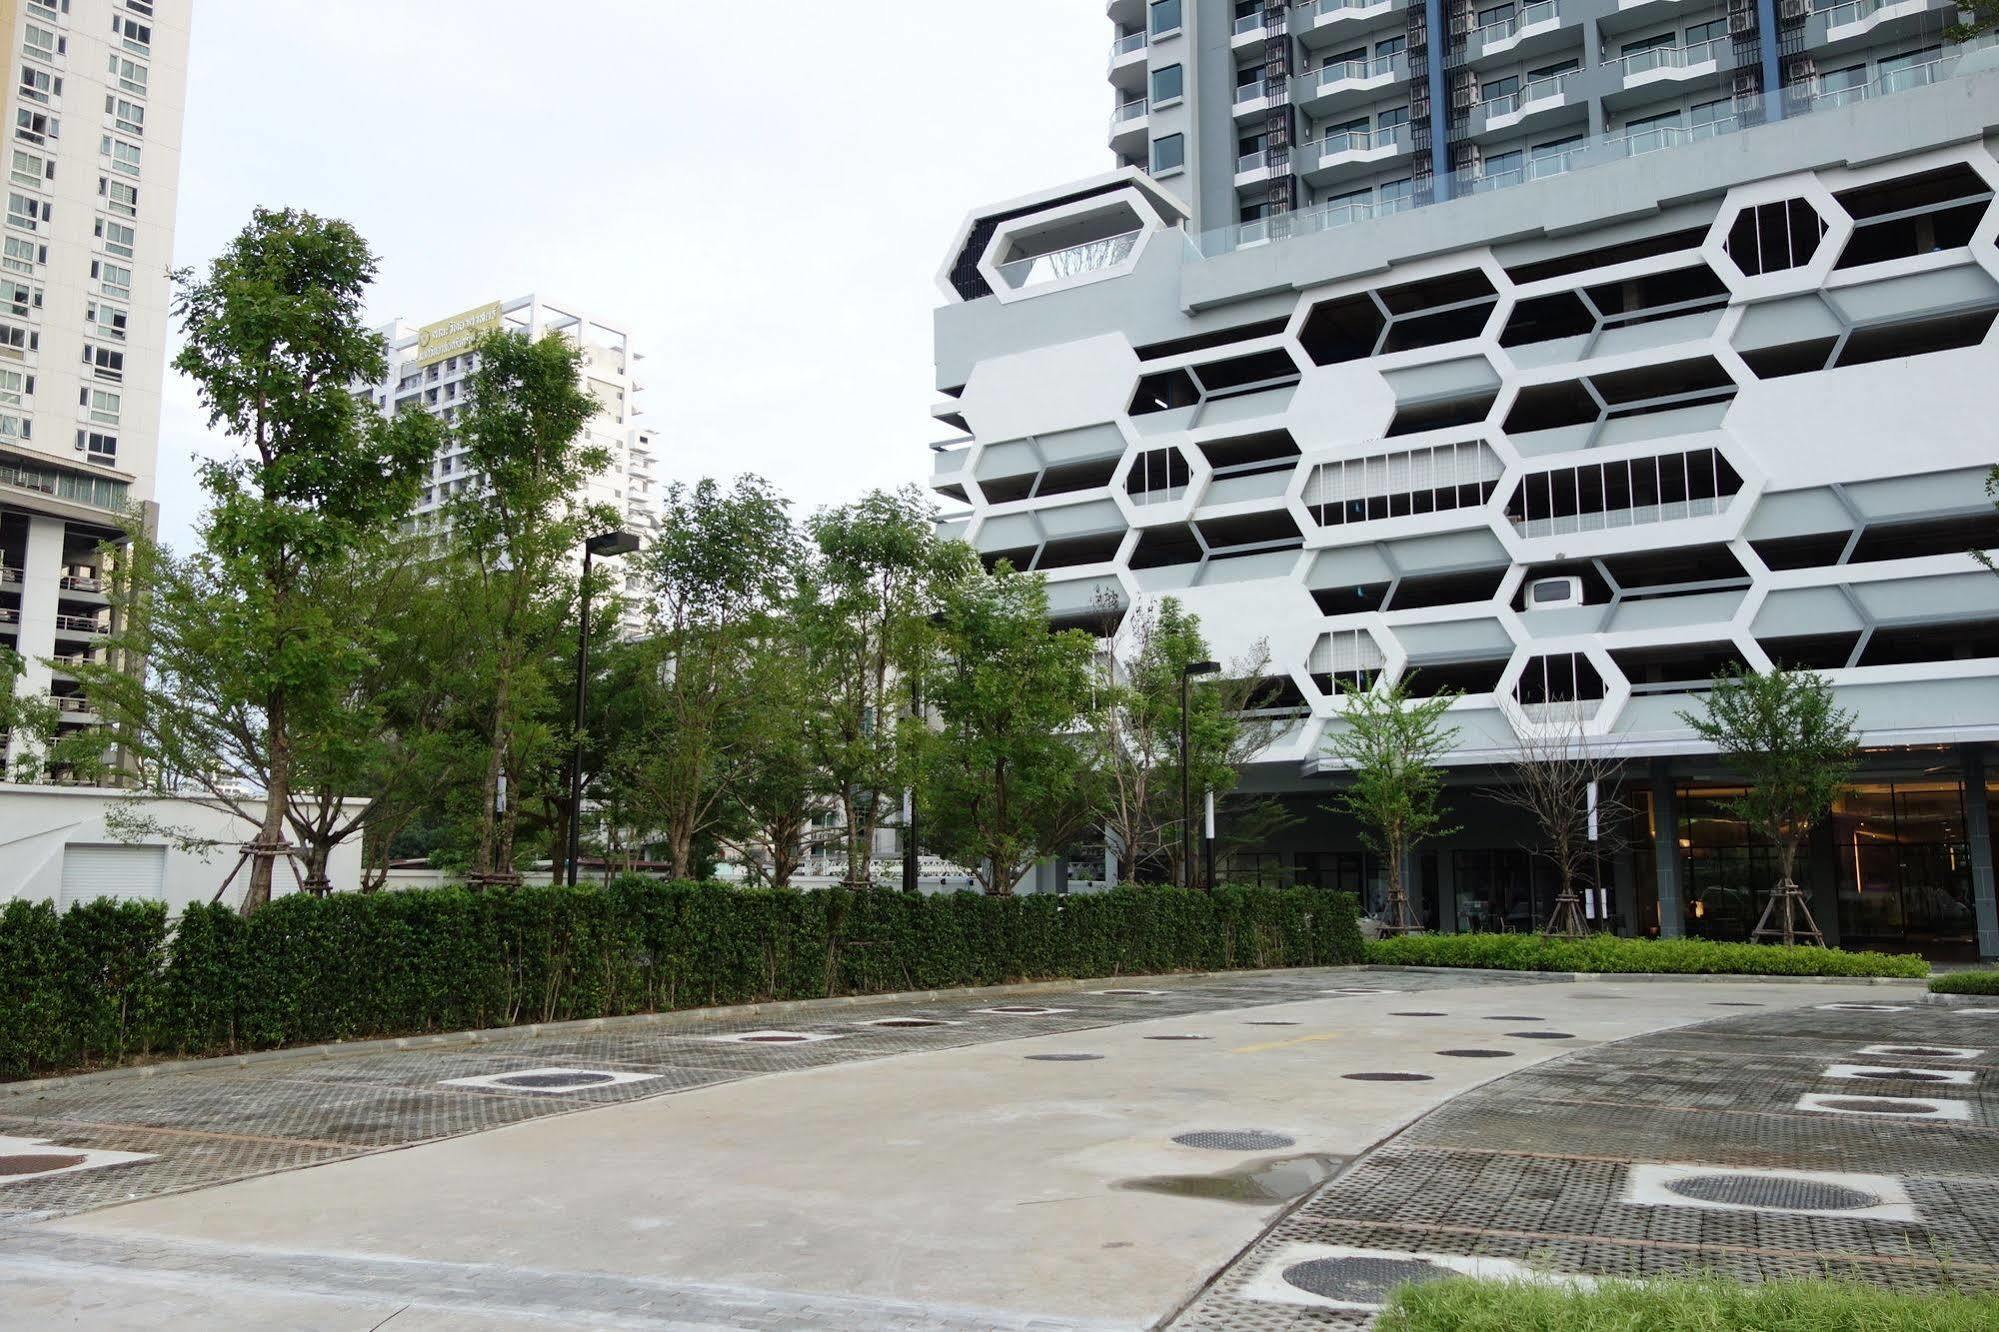 Supalai Asoke Residence 曼谷 外观 照片